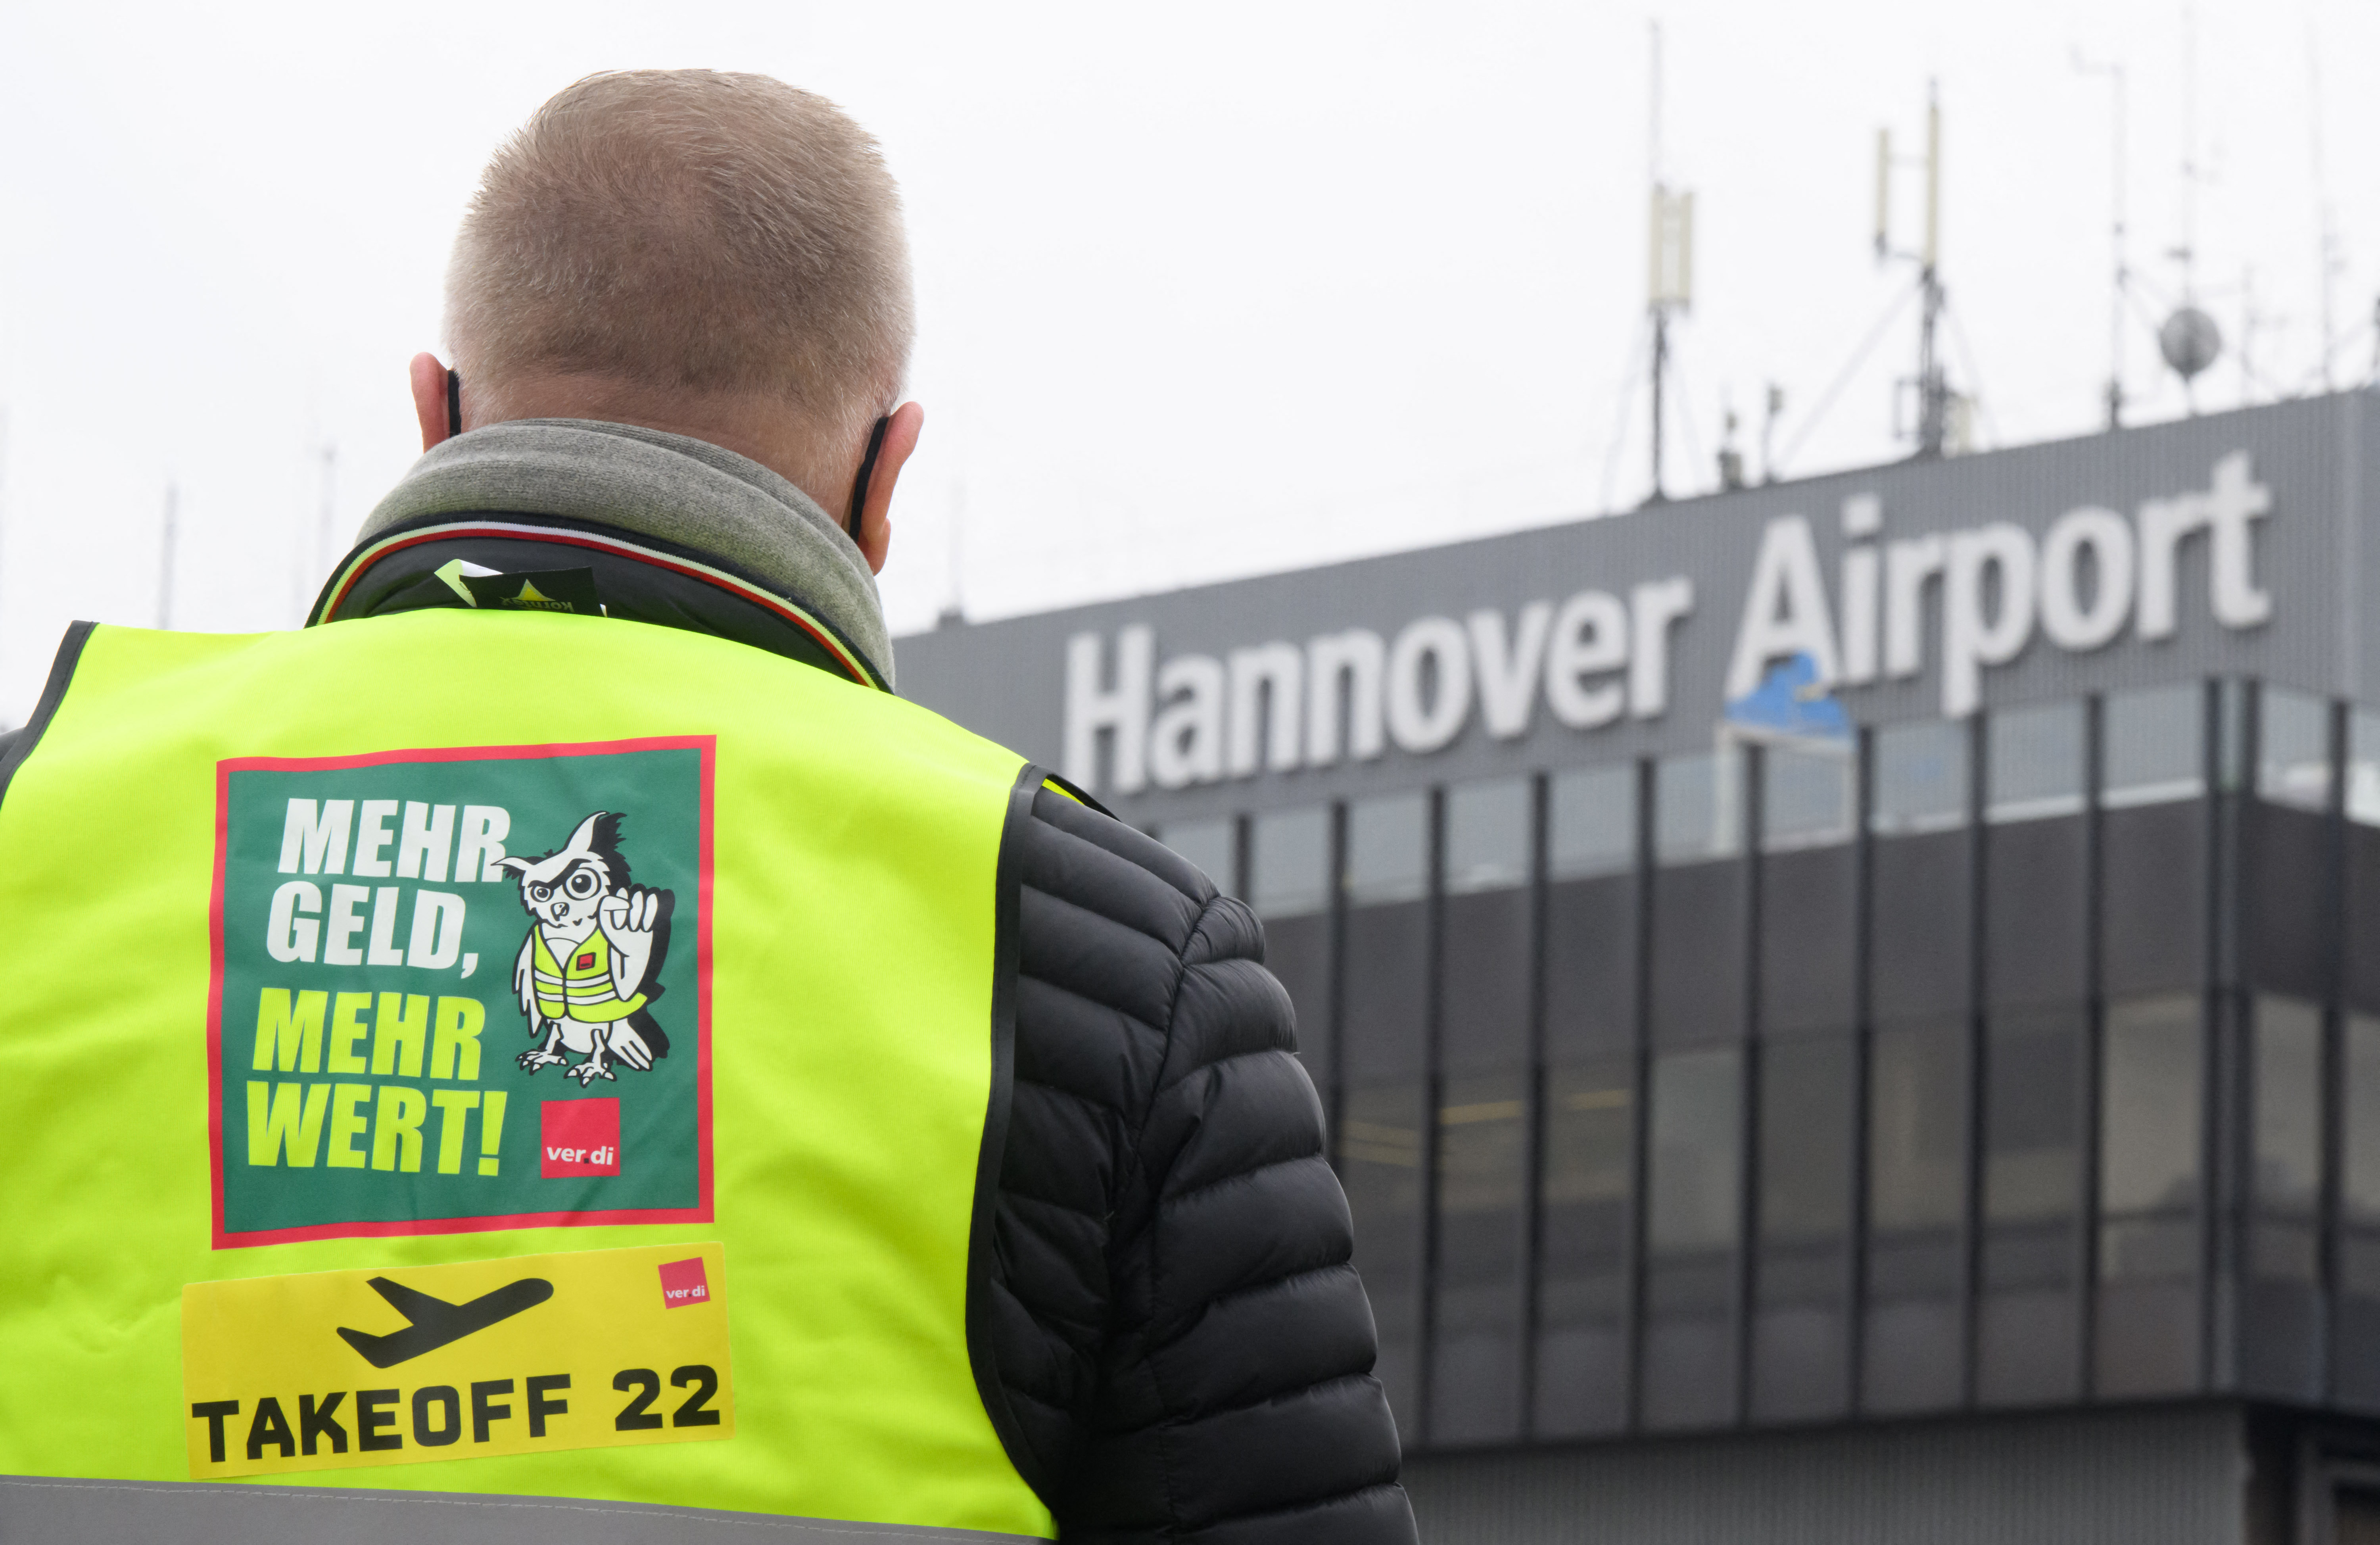 Biztonsági alkalmazottak sztrájkolnak Németországban, több tucat járatot törölnek a repülőtereken